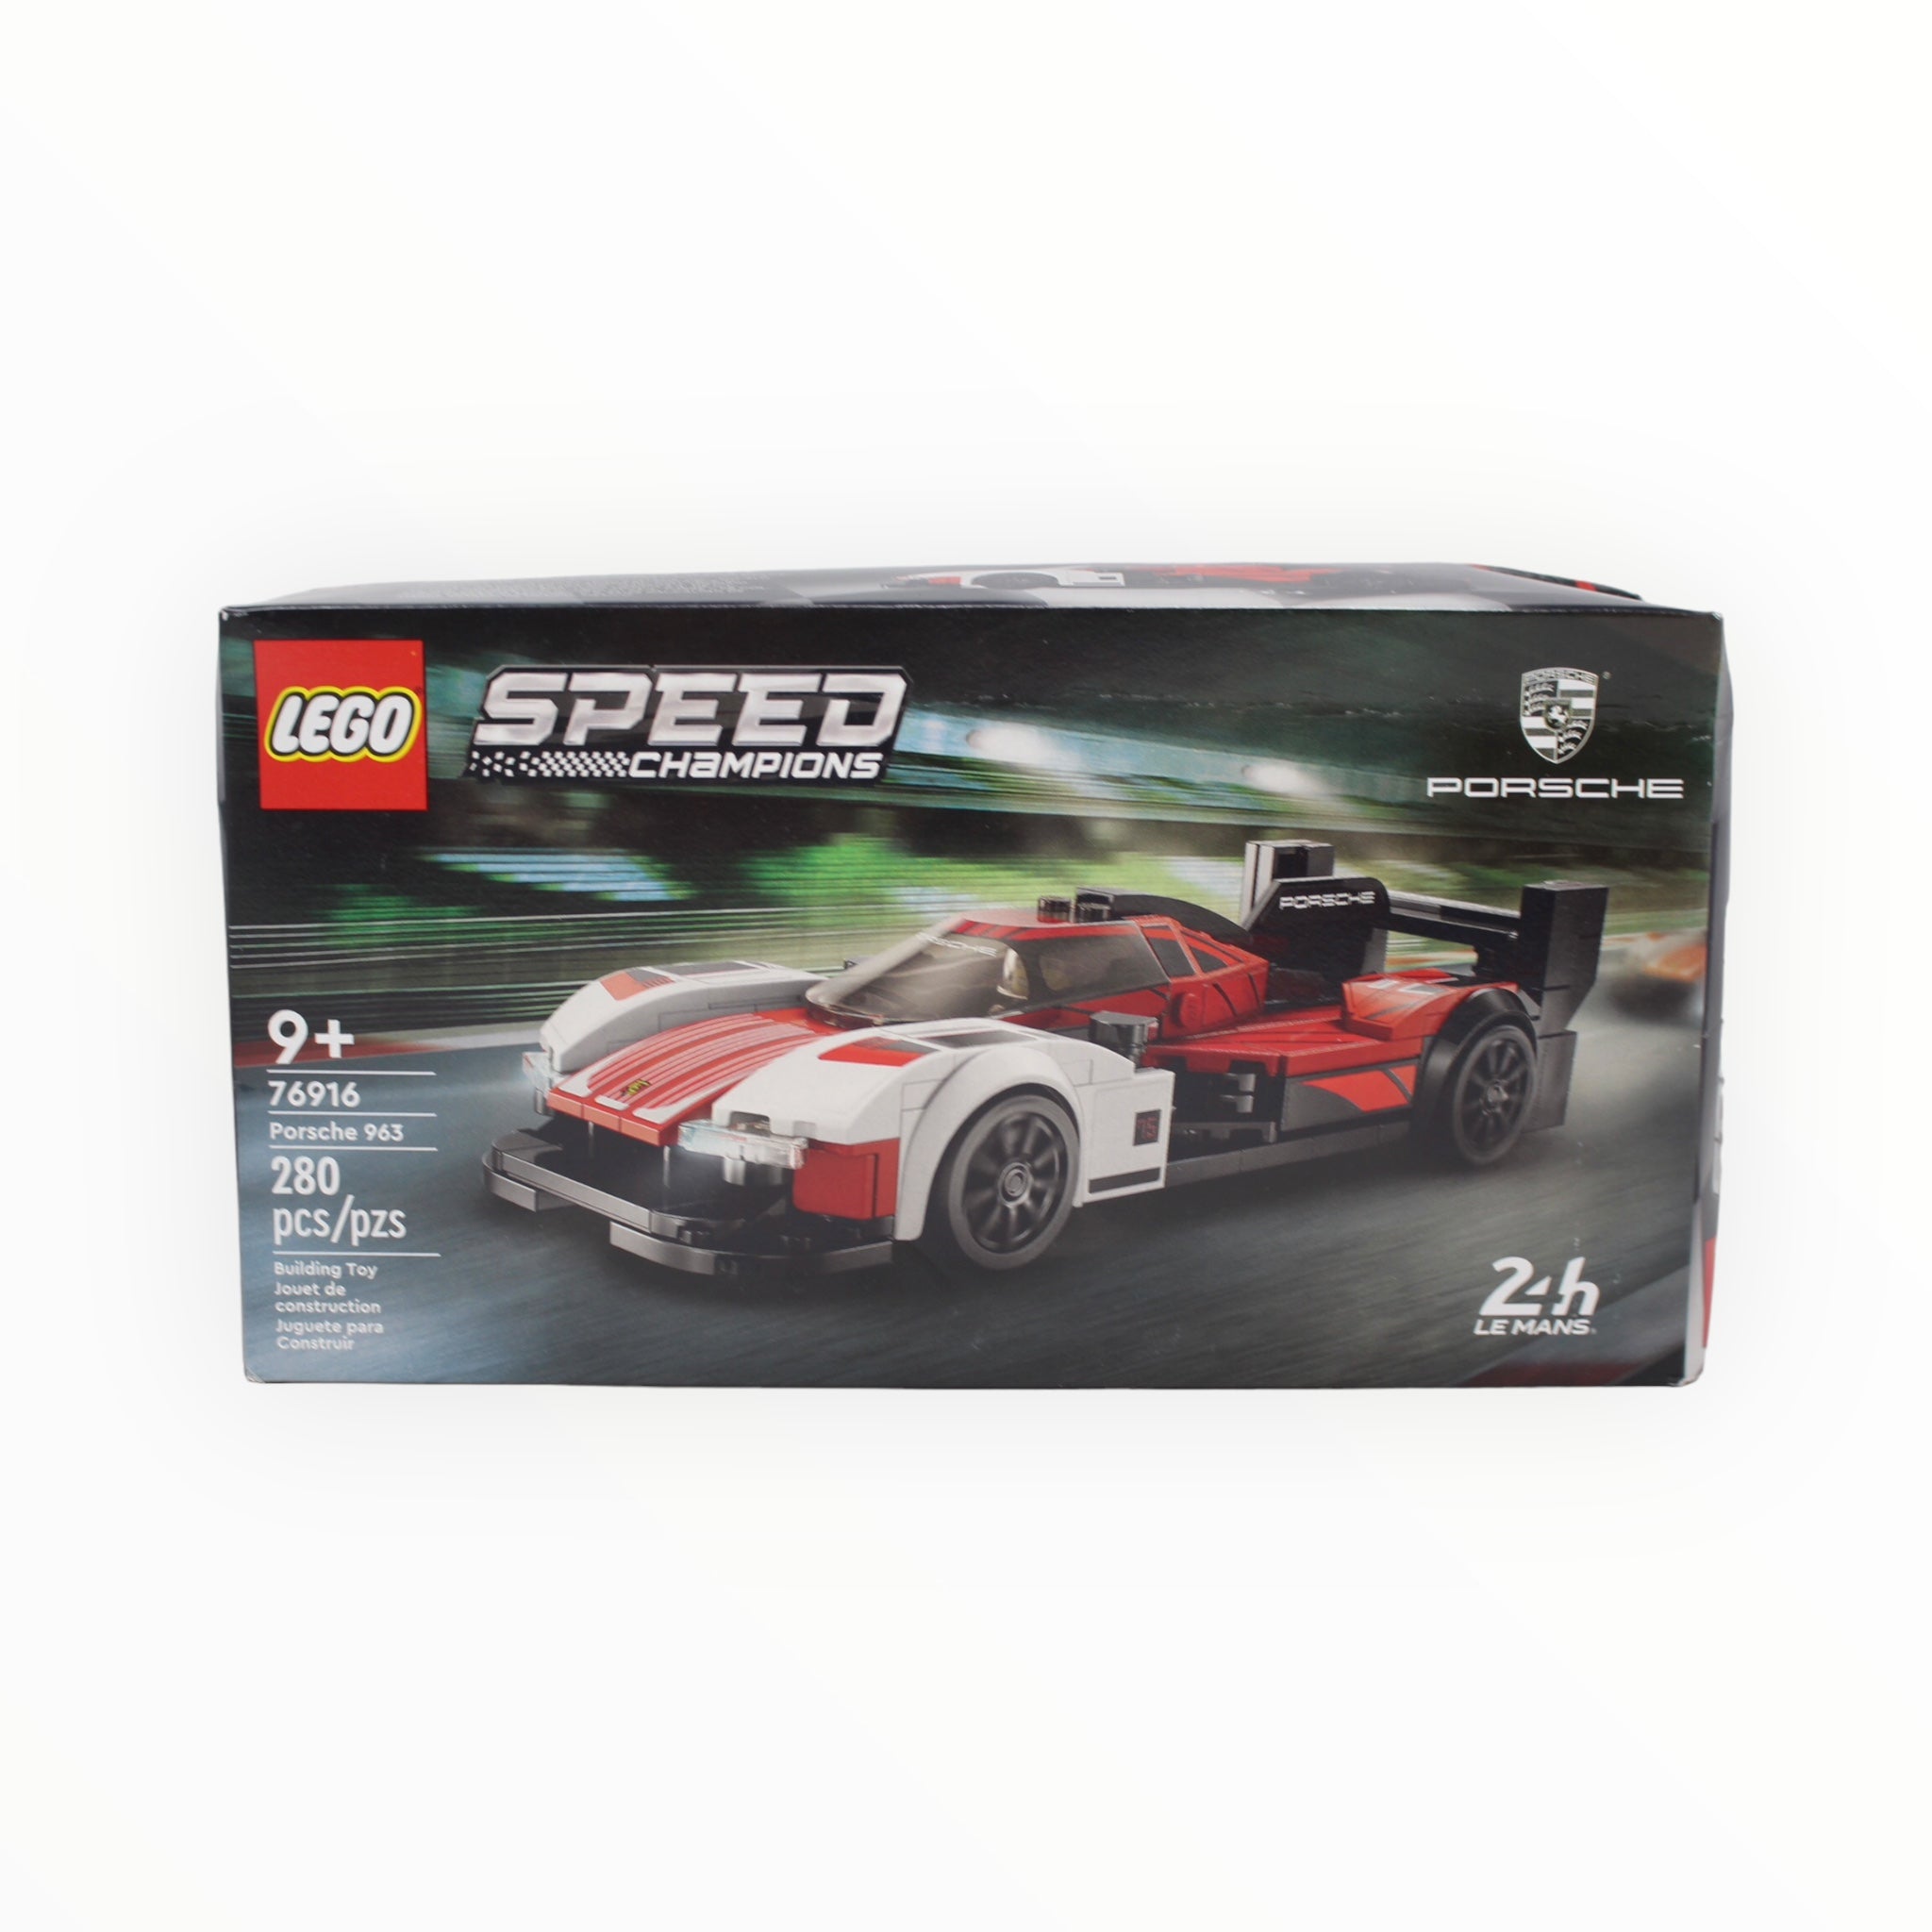 76916 Speed Champions Porsche 963 (damaged box)